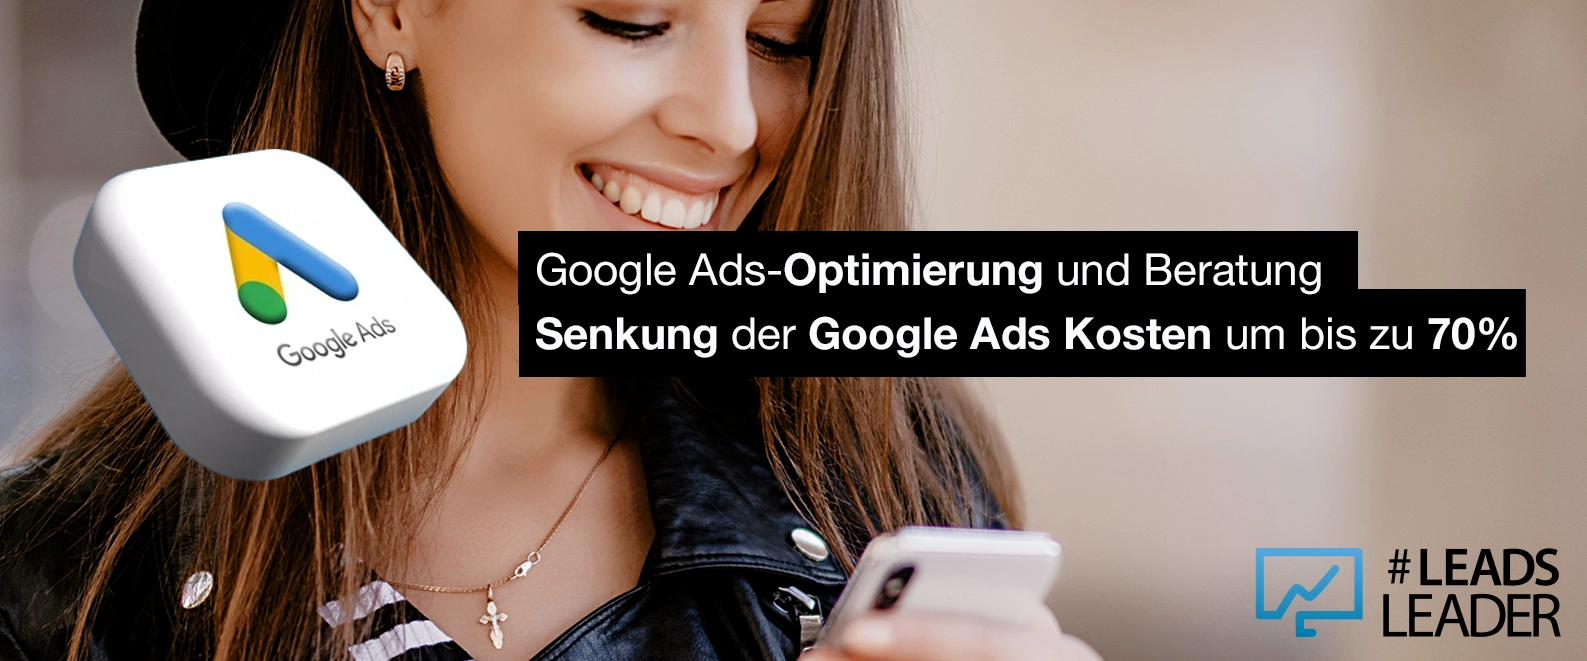 Mit Google Ads kostengünstig Werbung schalten